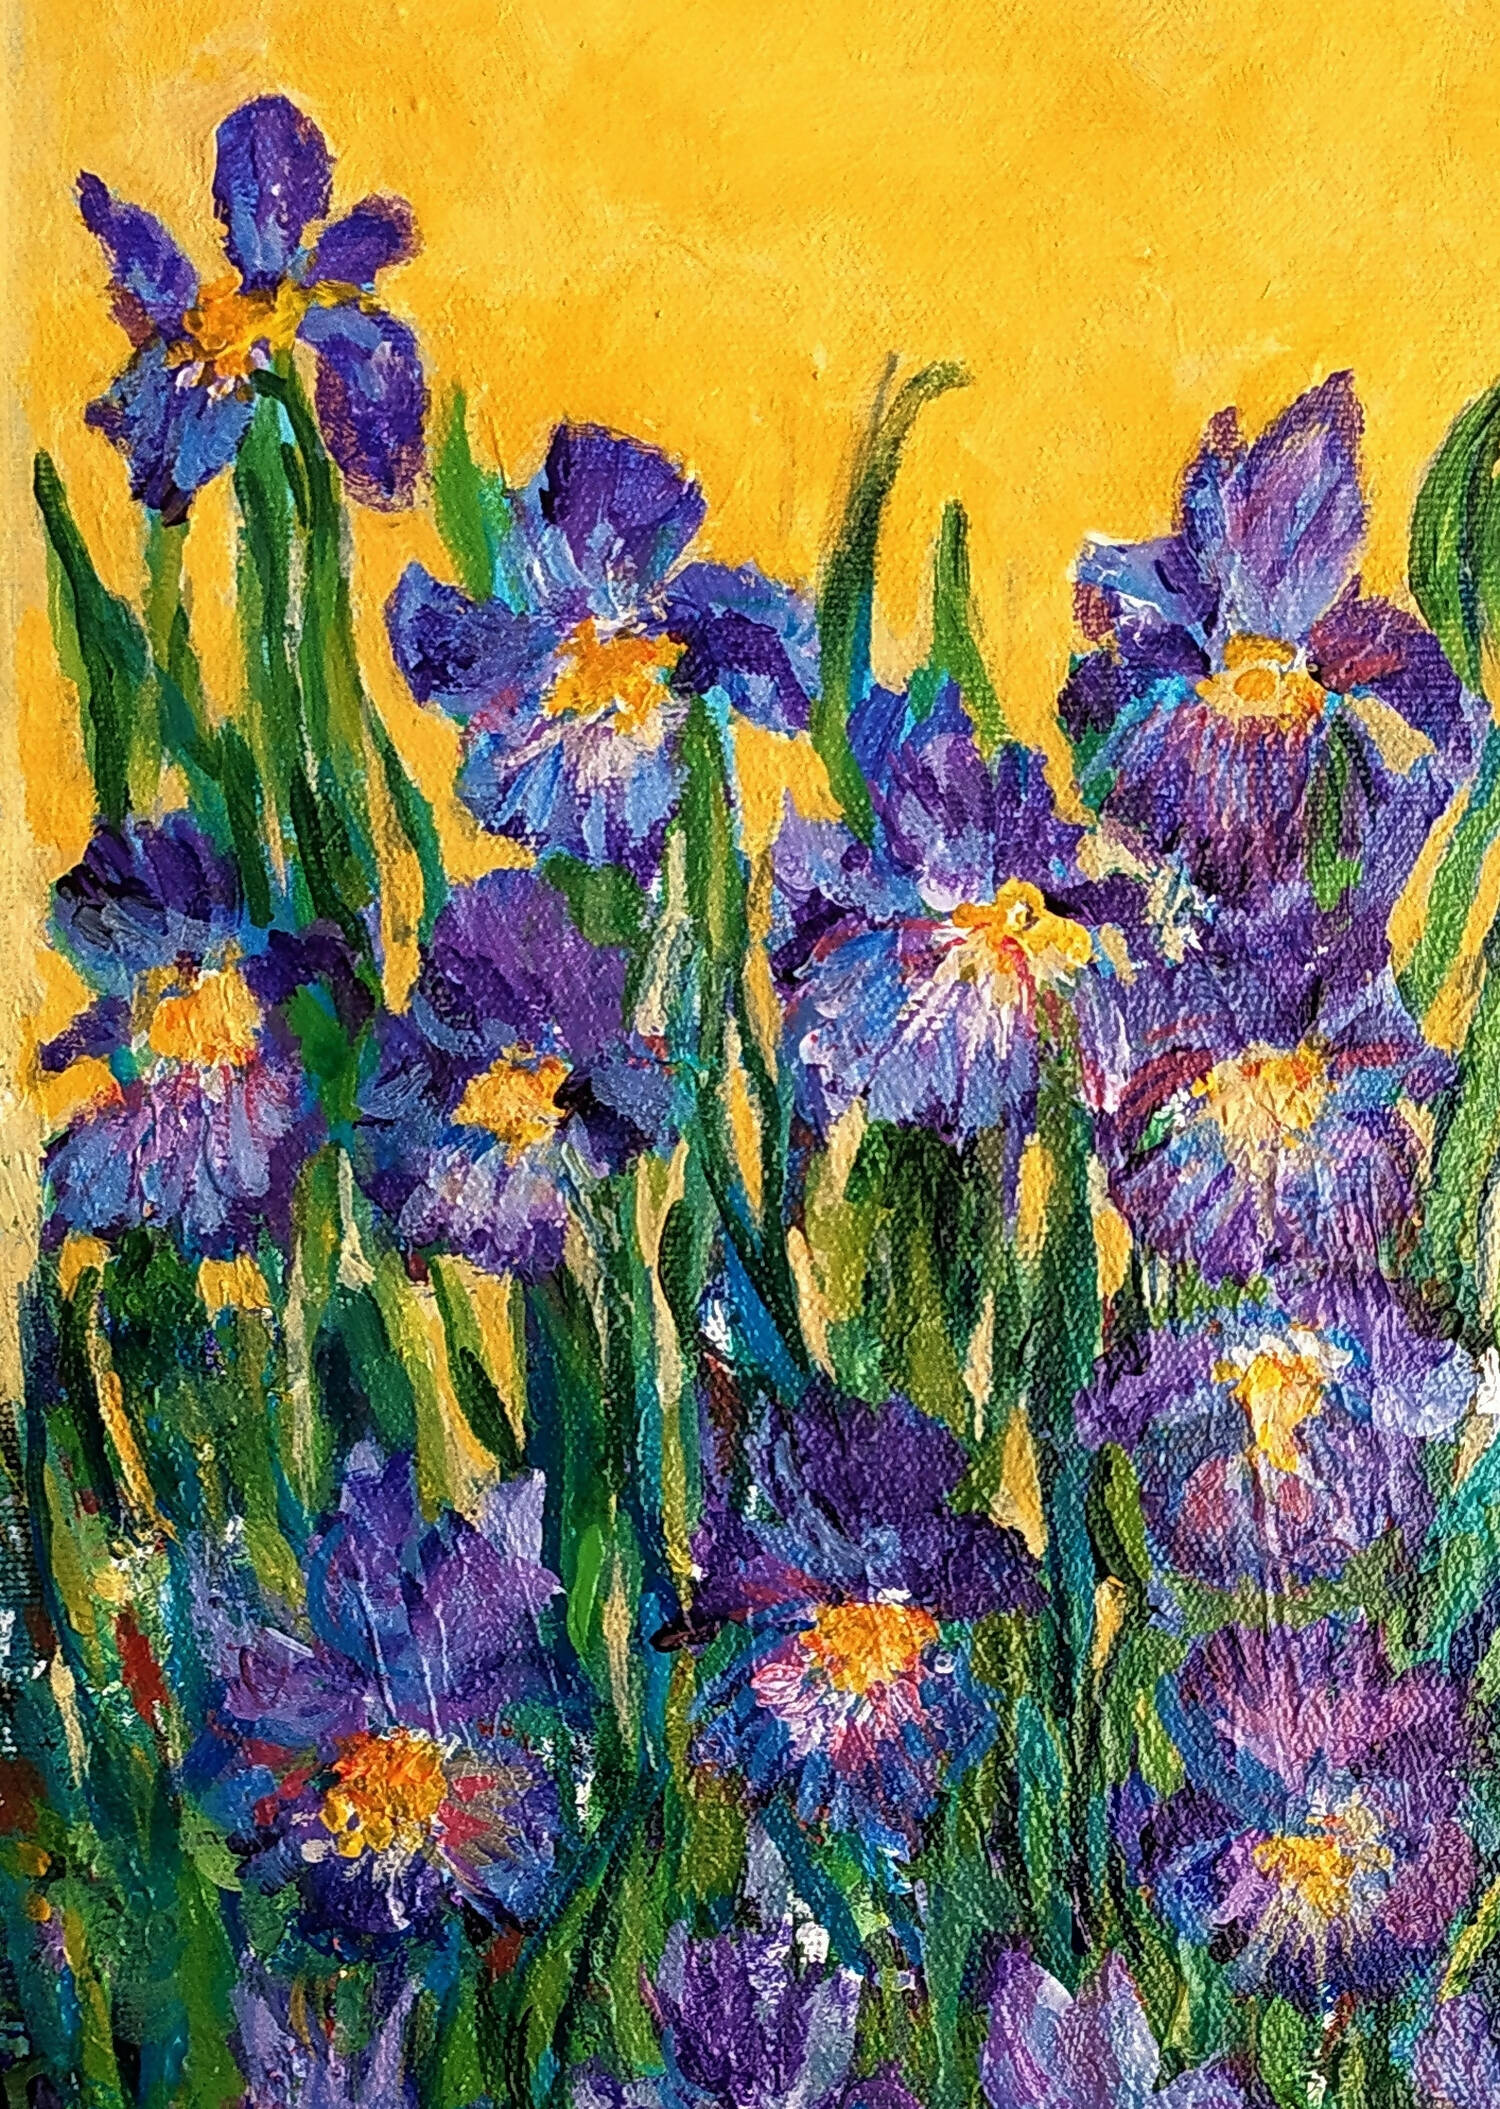 Iris garden Framed acrylic painting on canvas